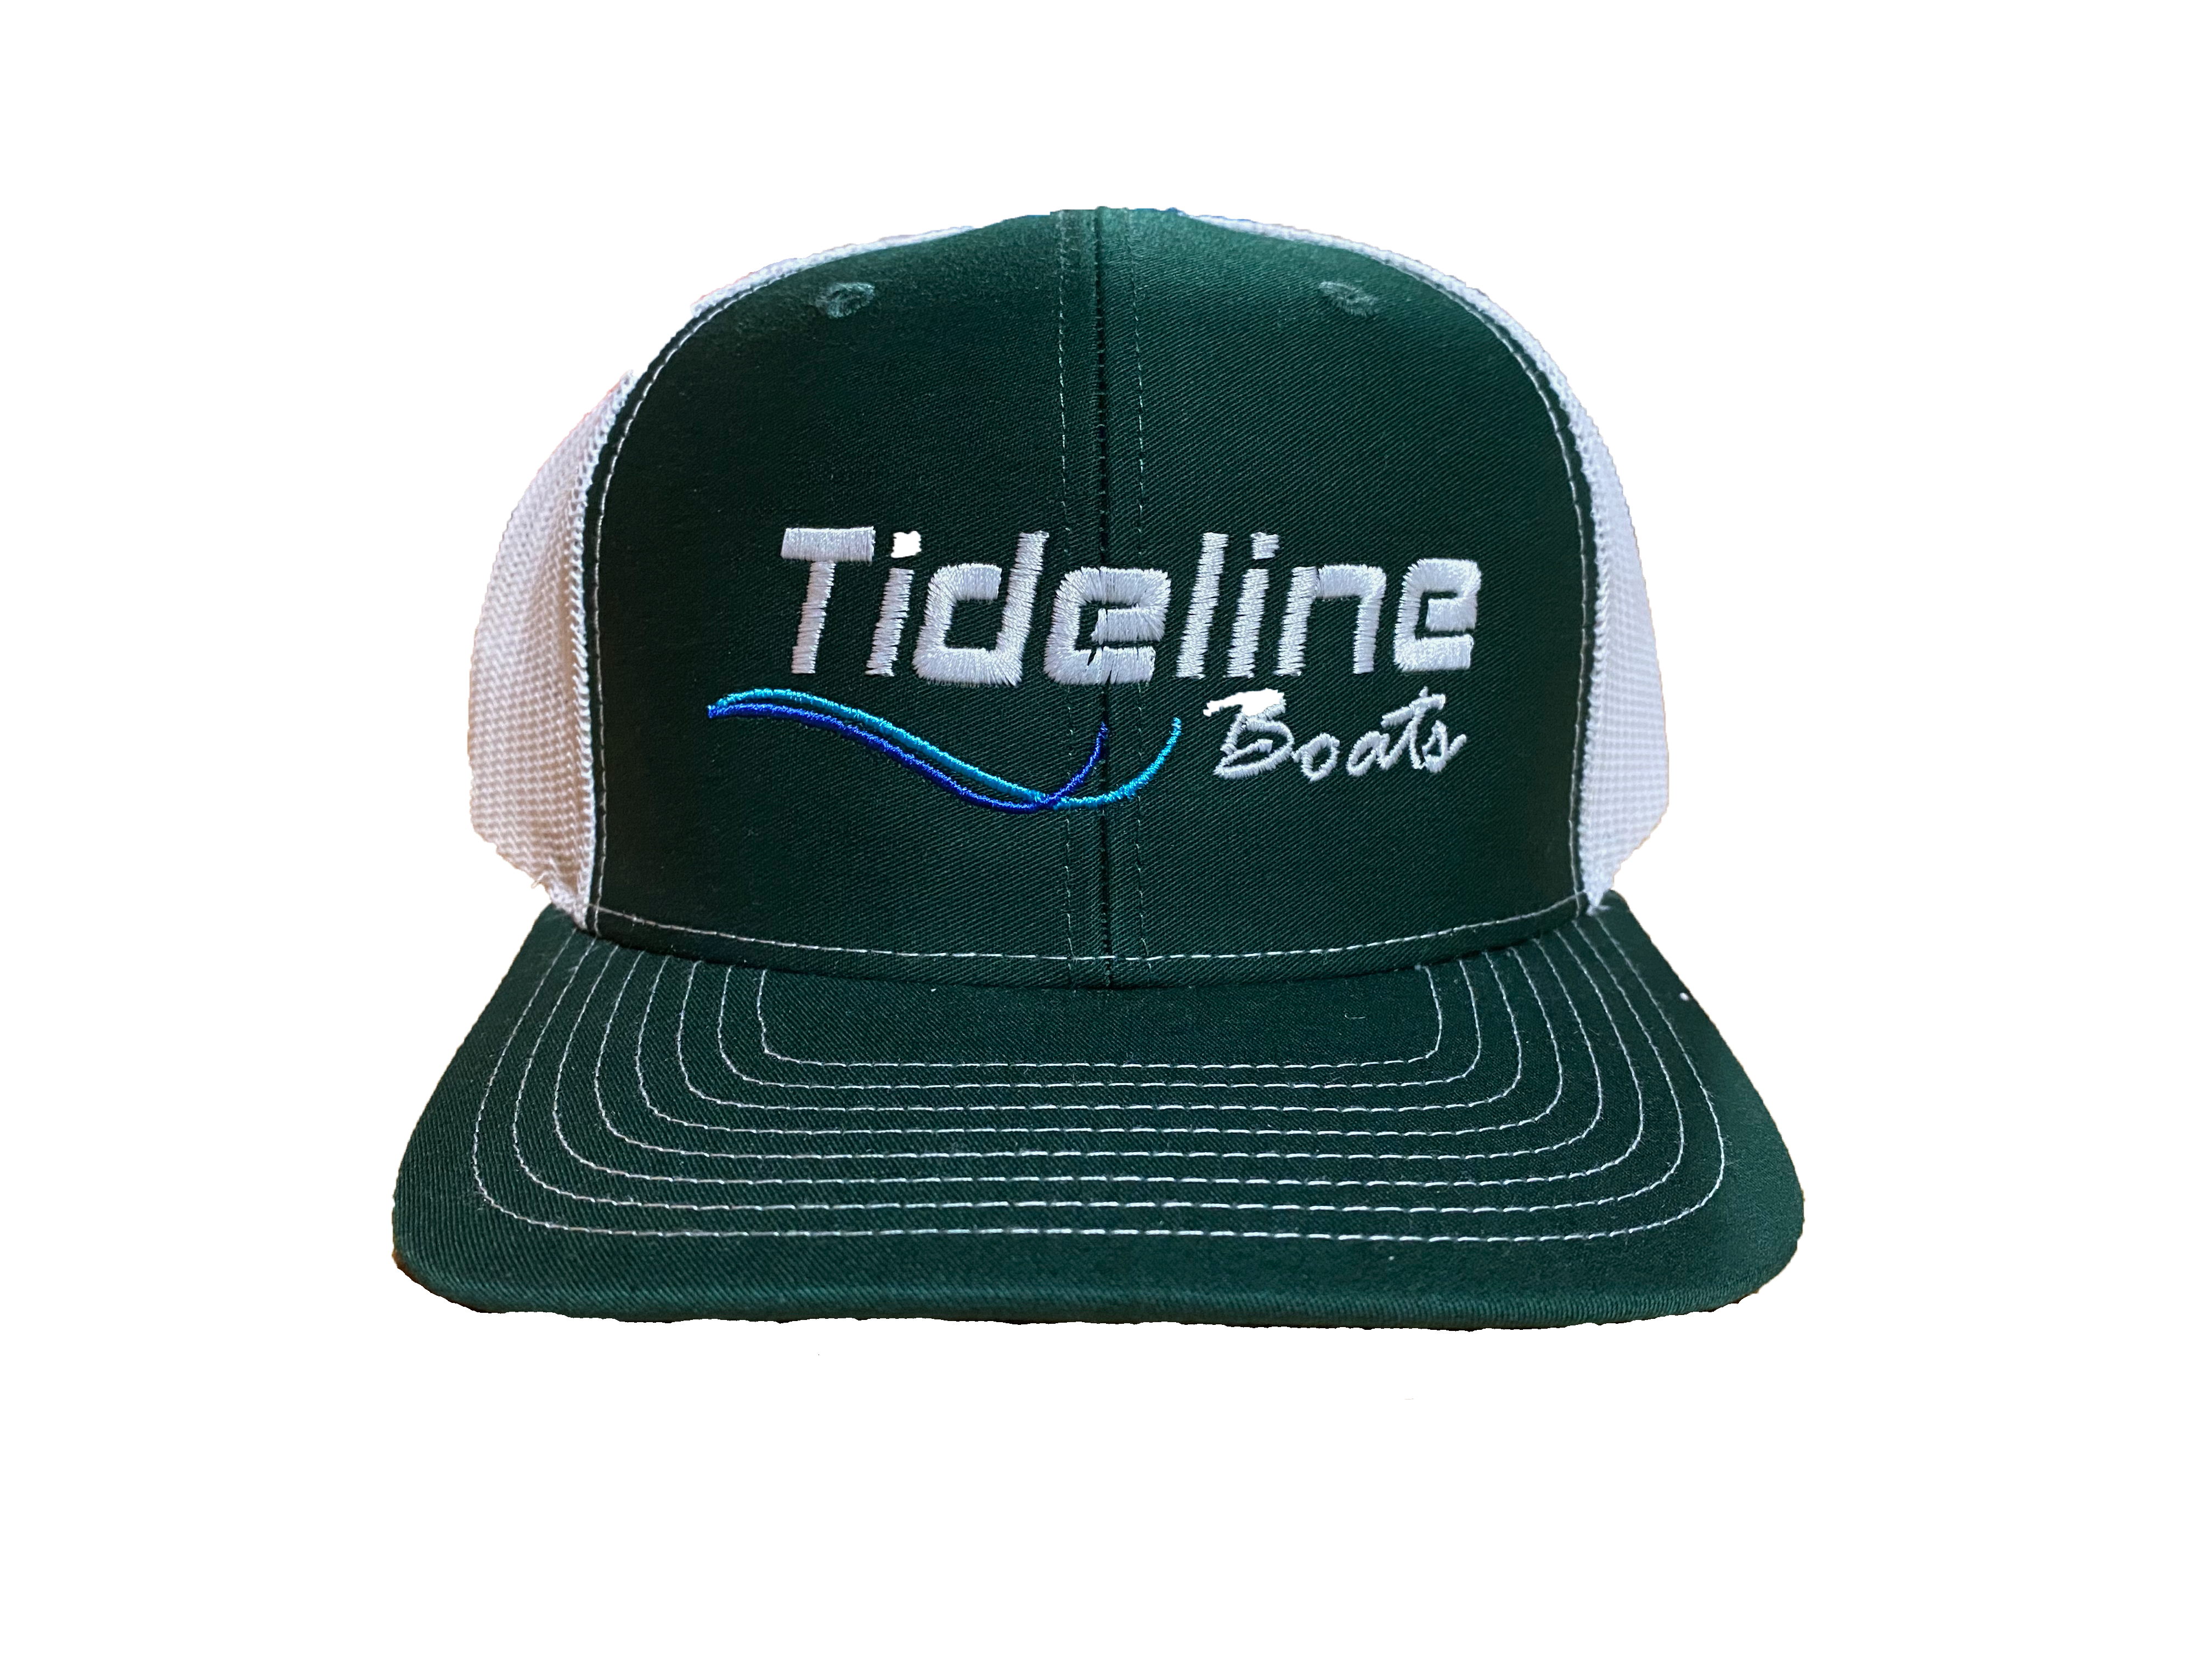 Tideline Boats Green Trucker Hat